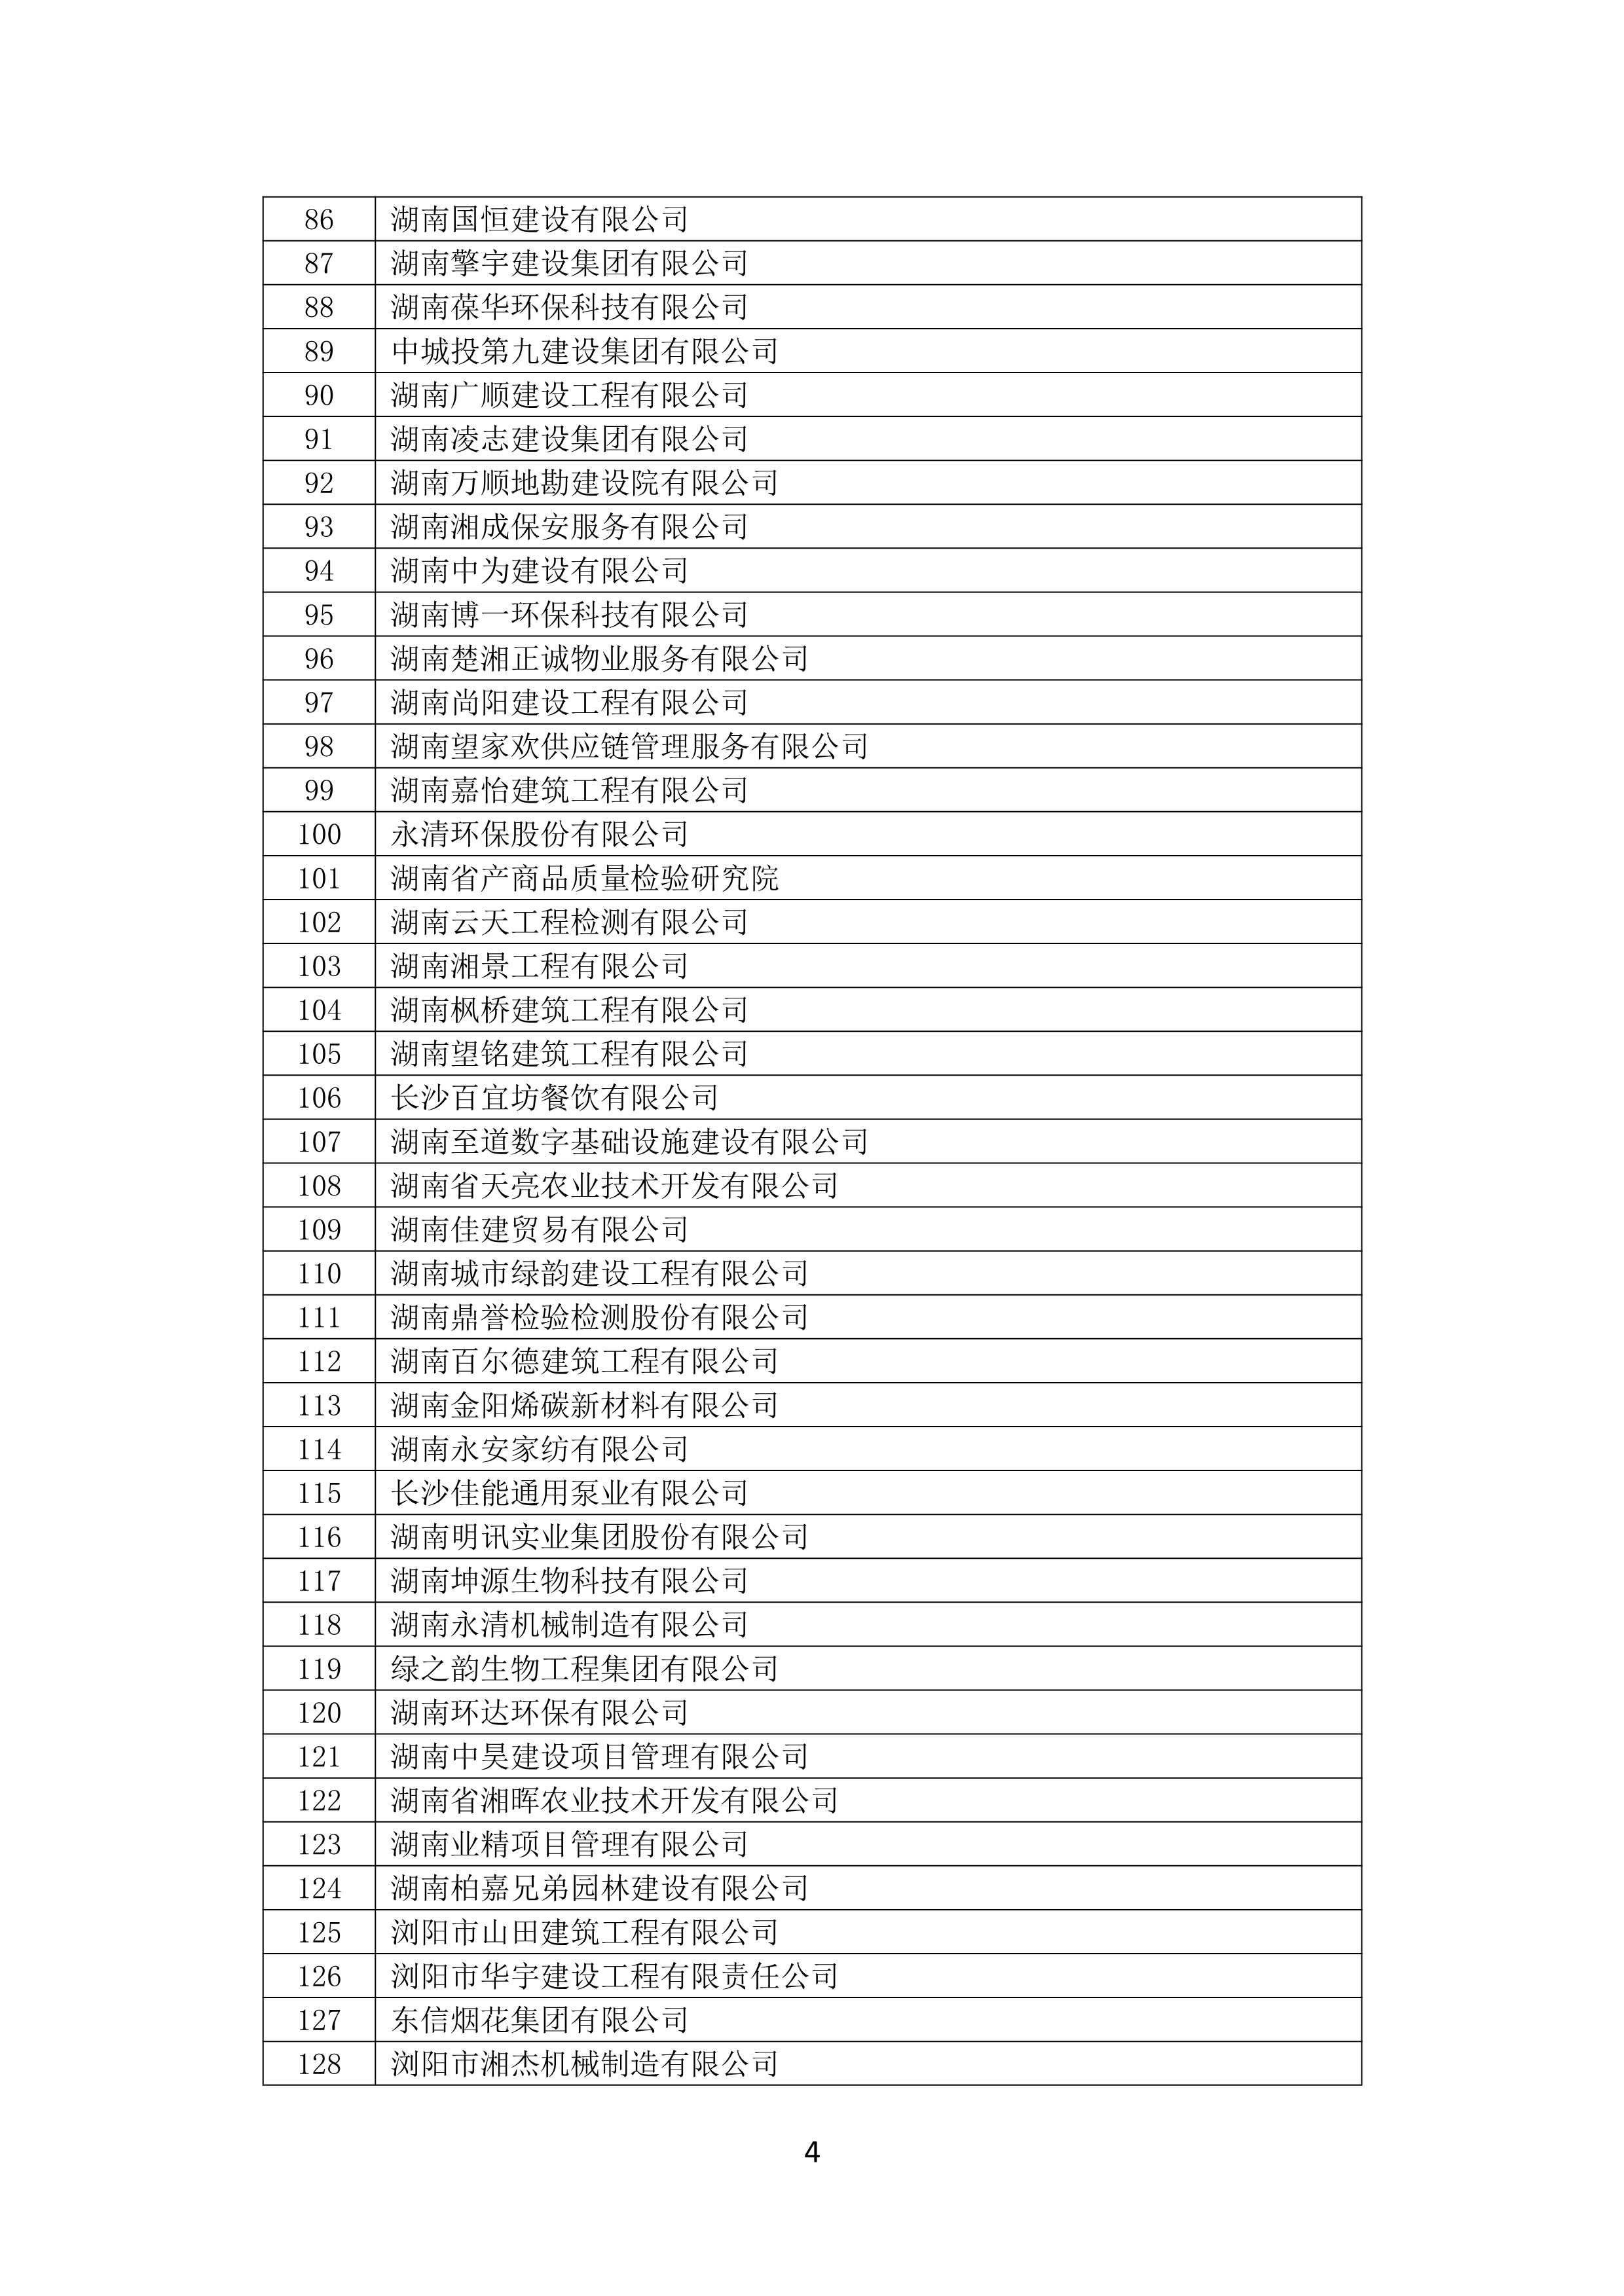 2021 年(nián)度湖南省守合同重信用企業名單_5.png